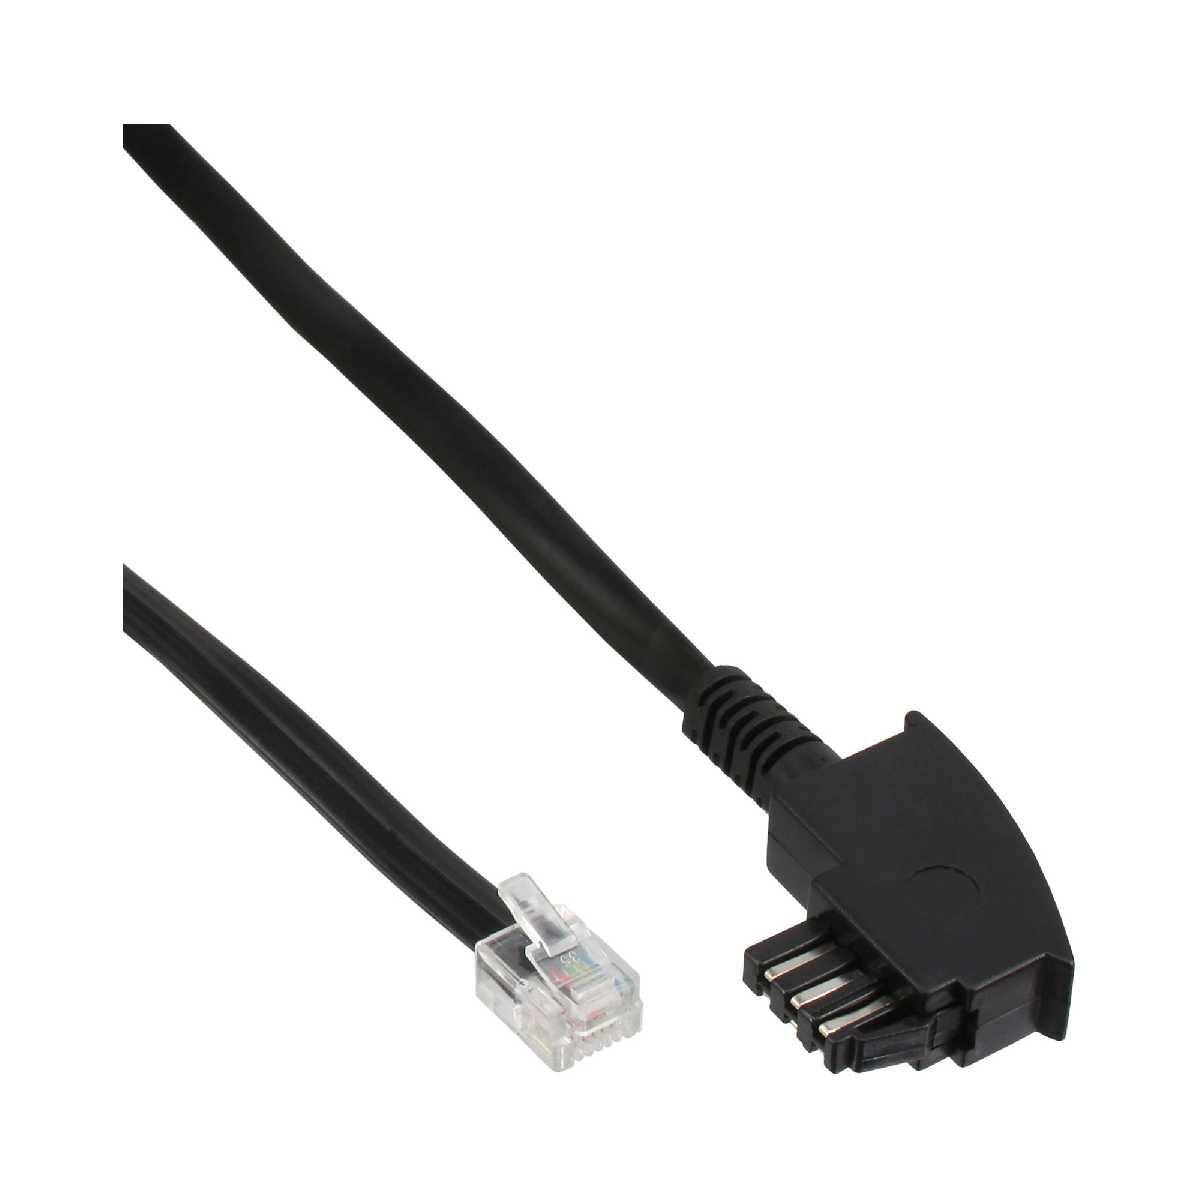 Kabel TAE-N AnschlußTAE-N zu RJ11 (6P4C) 10m